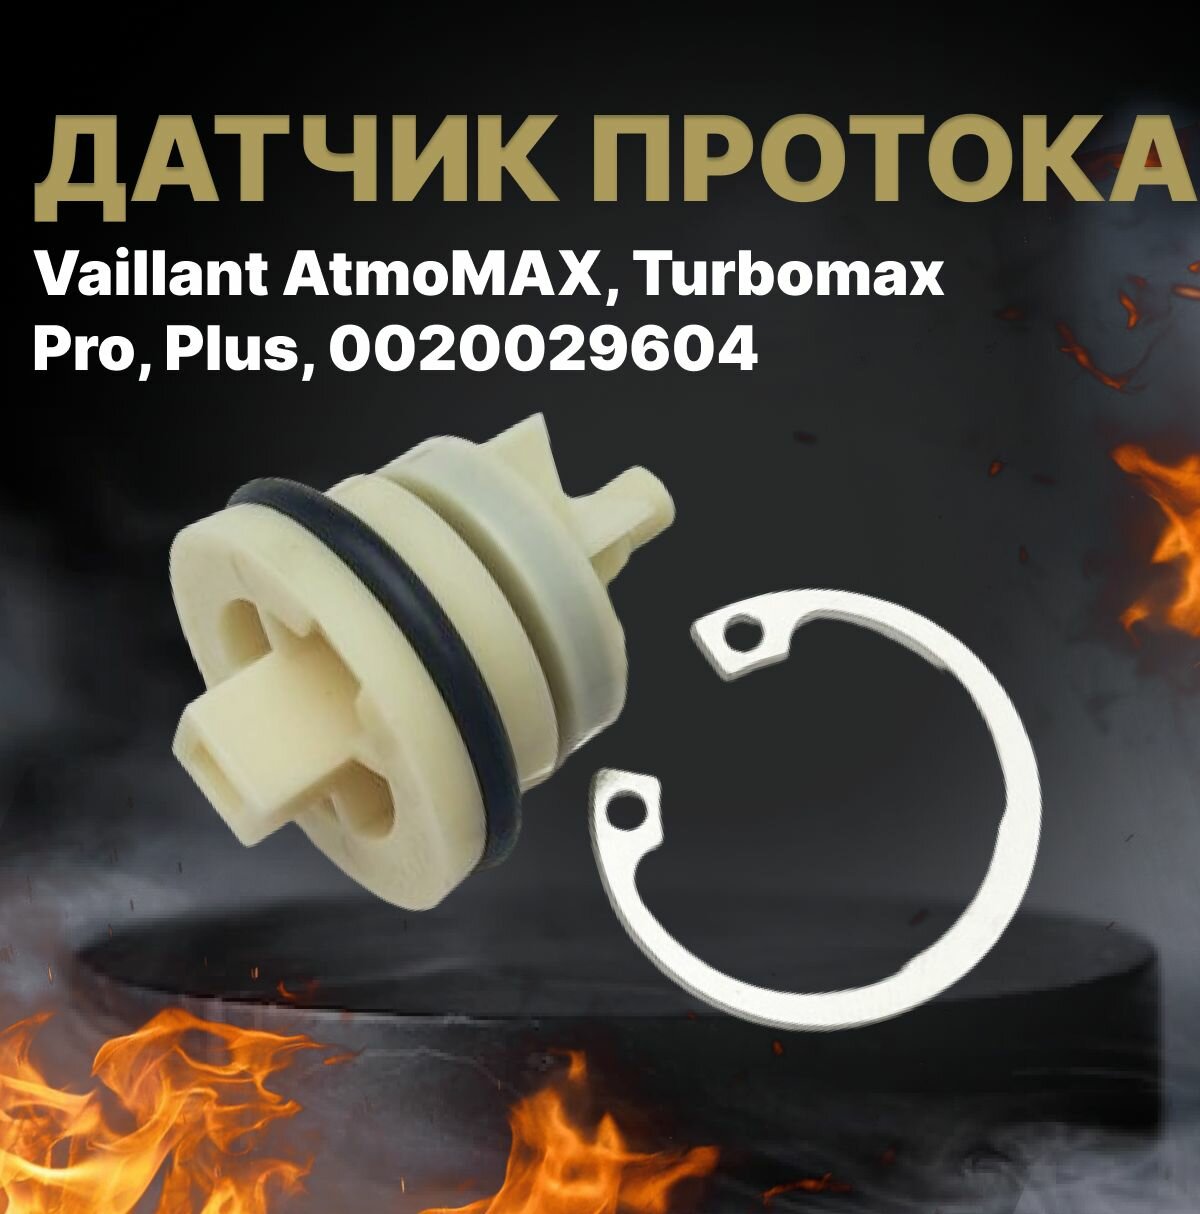 Датчик протока Vaillant AtmoMAX, Turbomax Pro, Plus, 0020029604